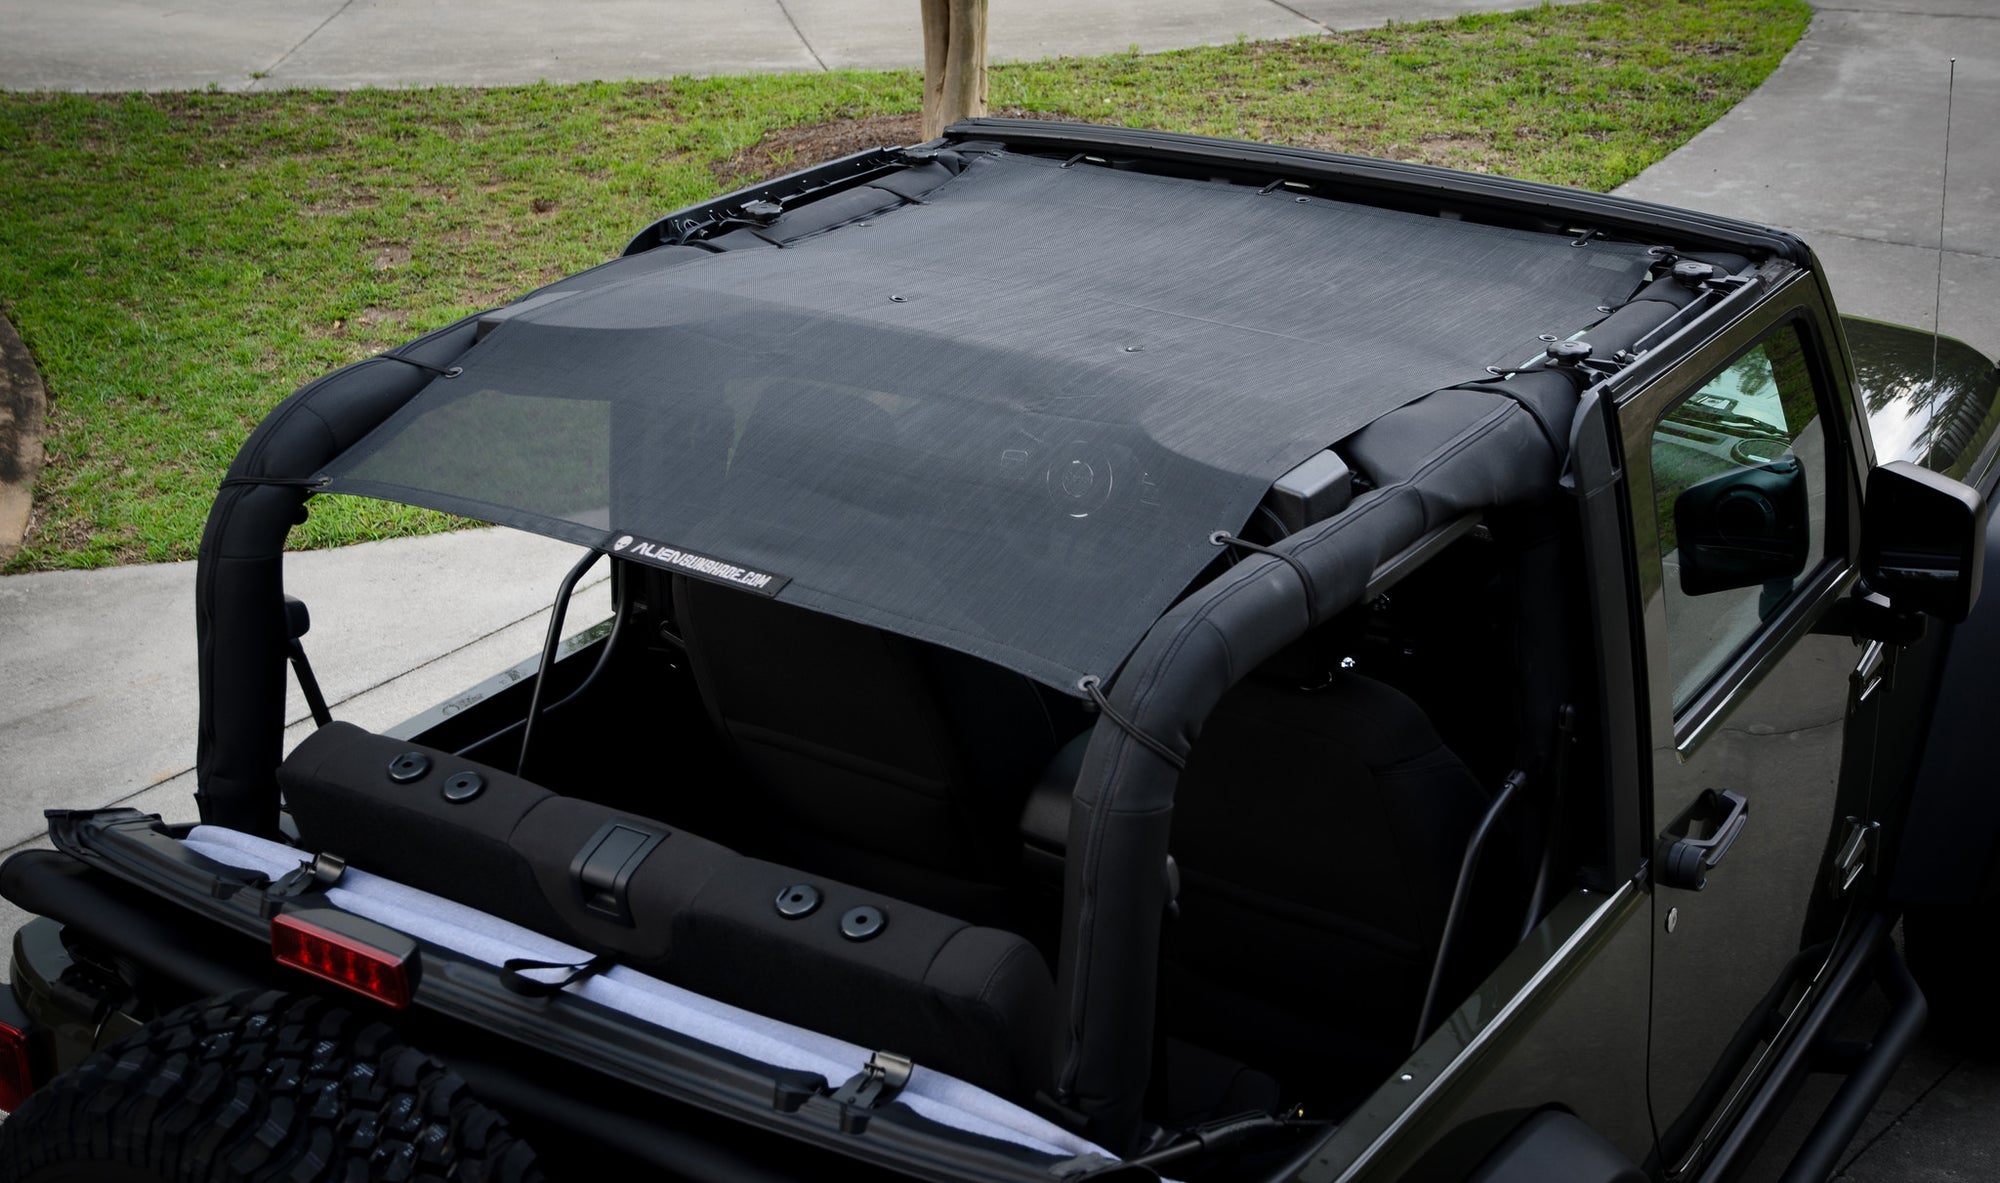 Alien Sunshade Jeep Wrangler Jkfb Sun Shade Mesh Top Covers Front Rear Of Your 2 Door Jk 07 18